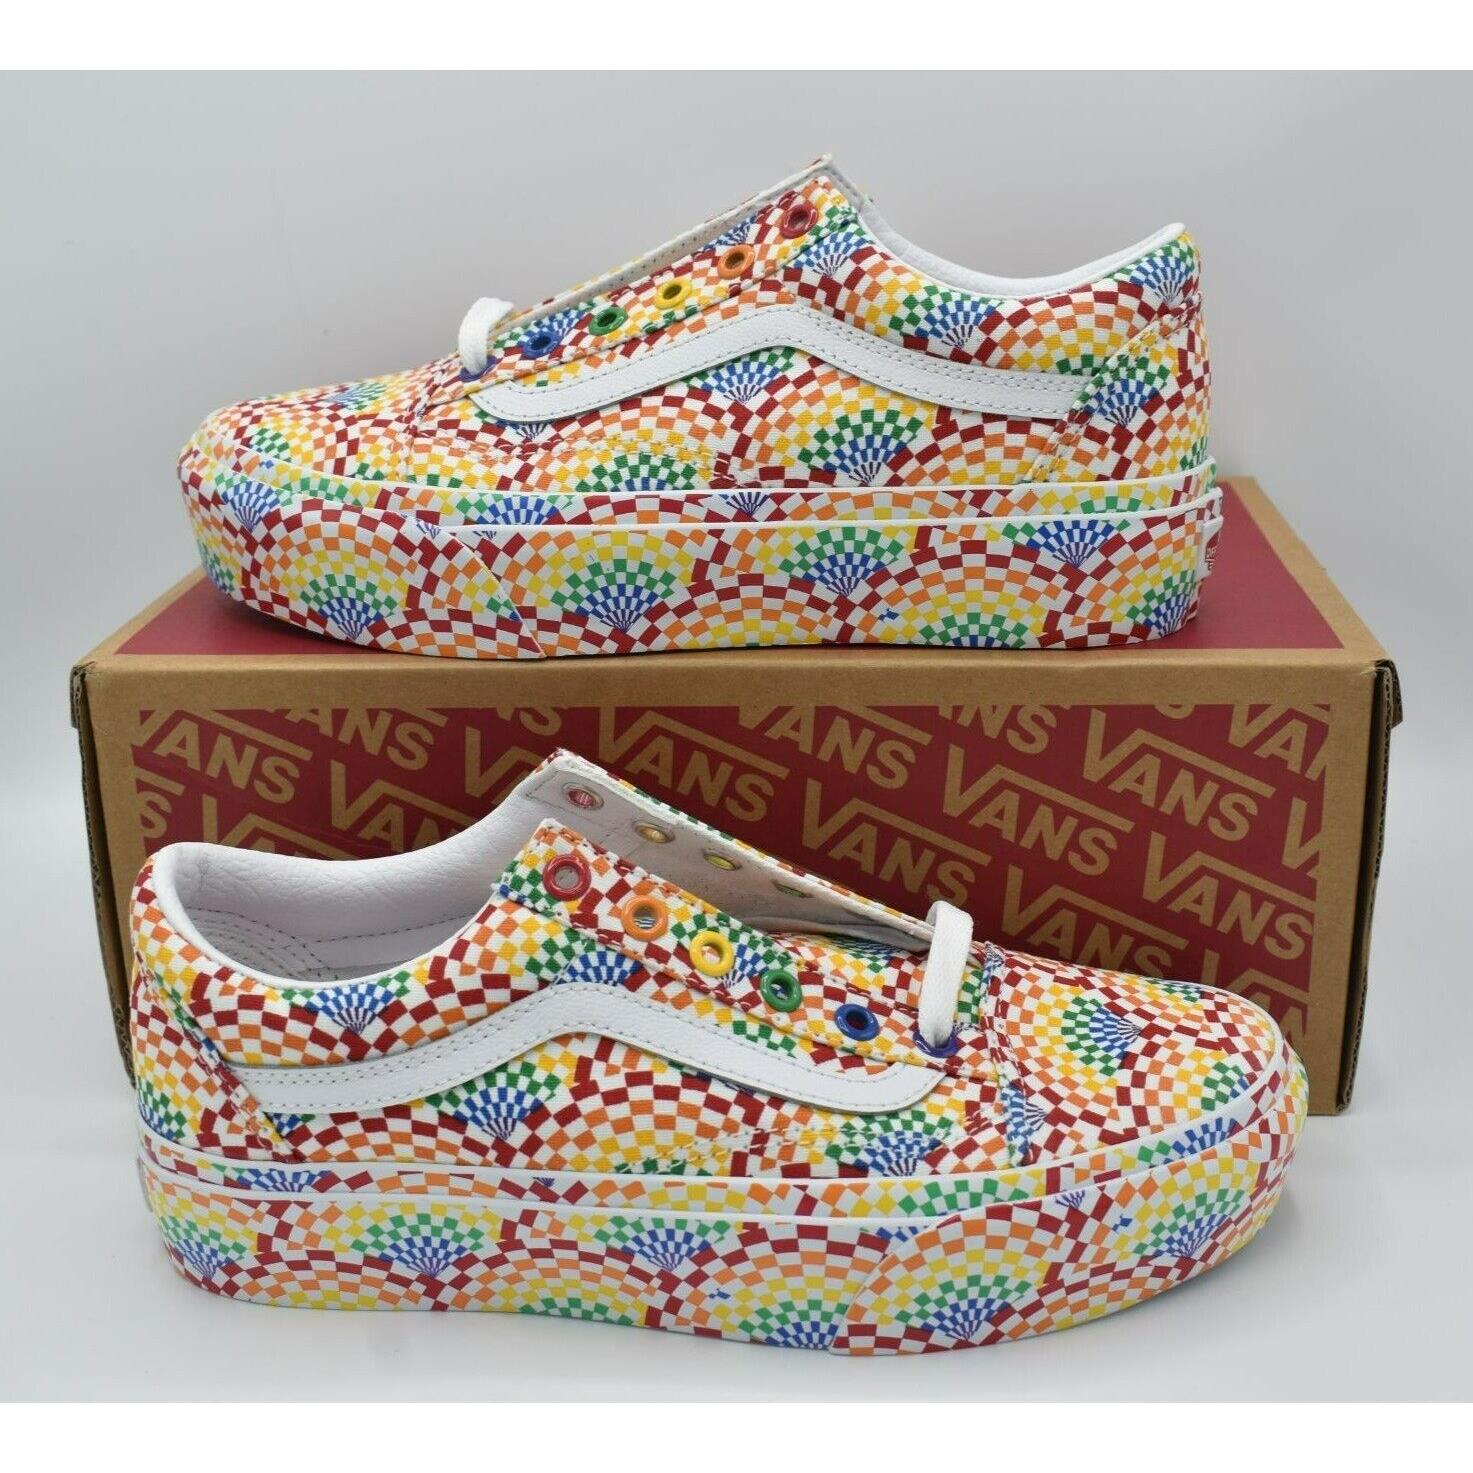 Vans Womens Size 9 Old Skool Platform Multicolored Pride Lgbtq+ Shoes Sneakers